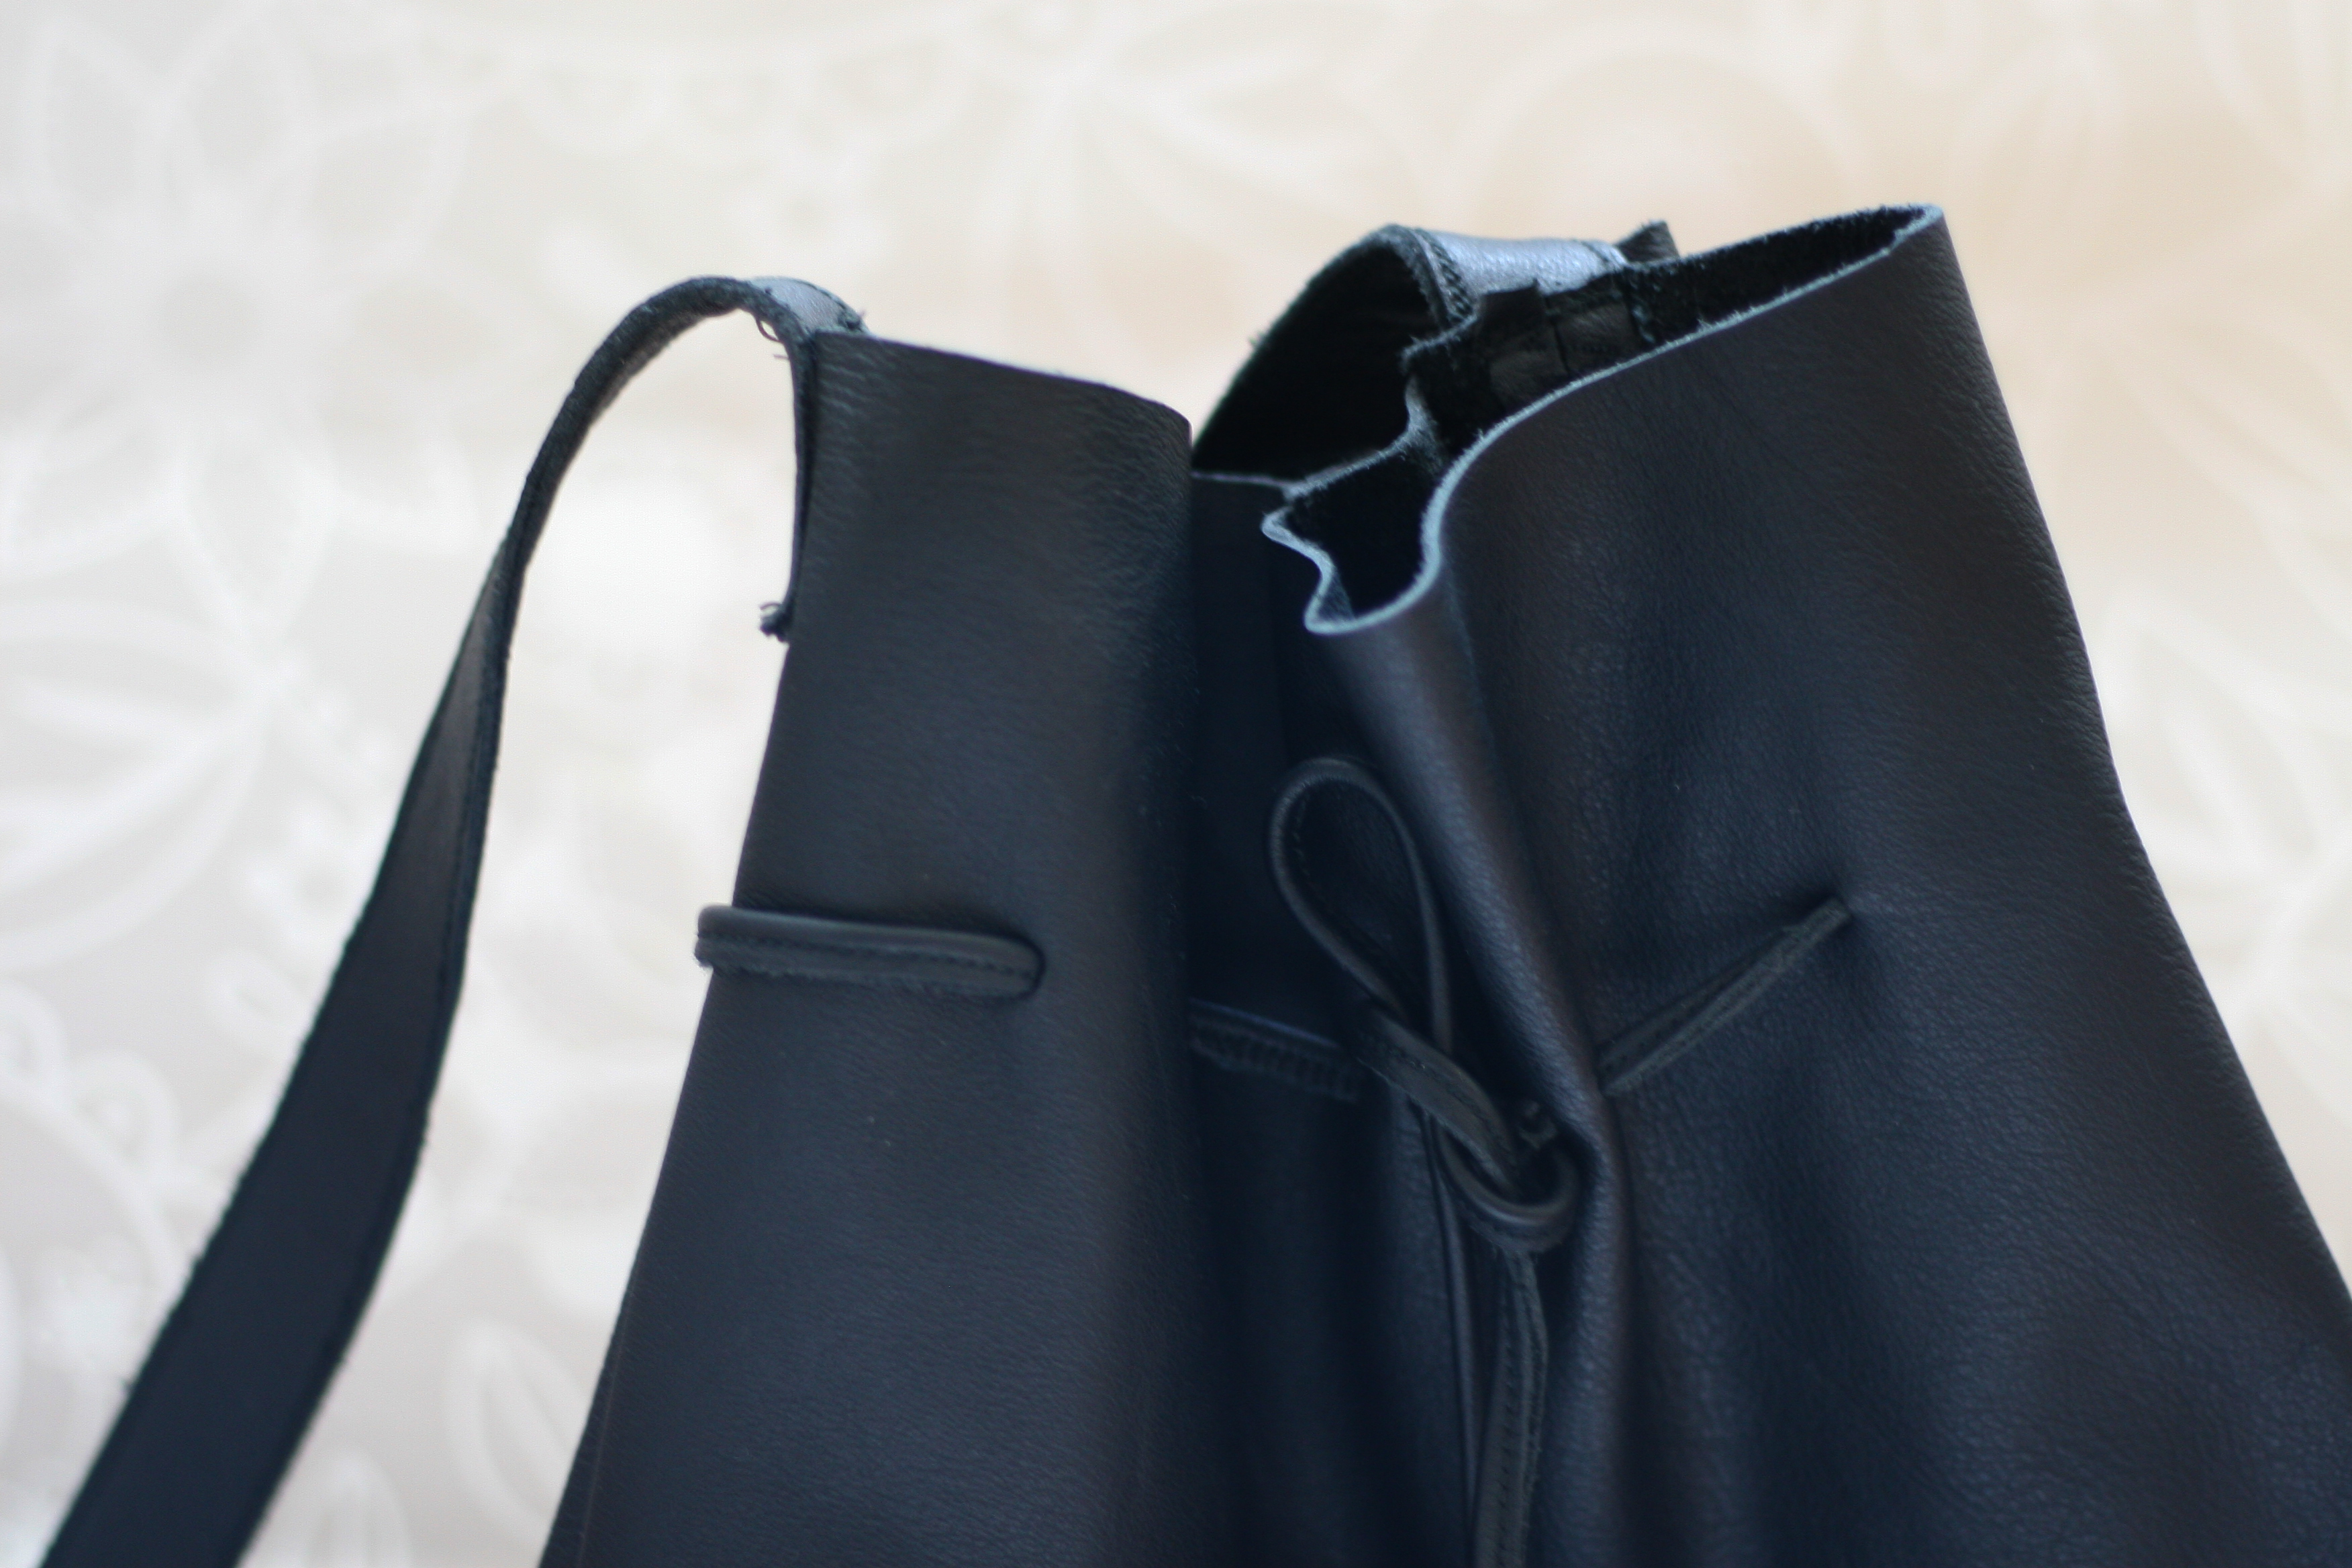 Bucket Bags sind momentan total im Trend. Wieso nicht einfach eine DIY Bucket Bag aus Leder im Stil von Mansur Gavriel selber machen?